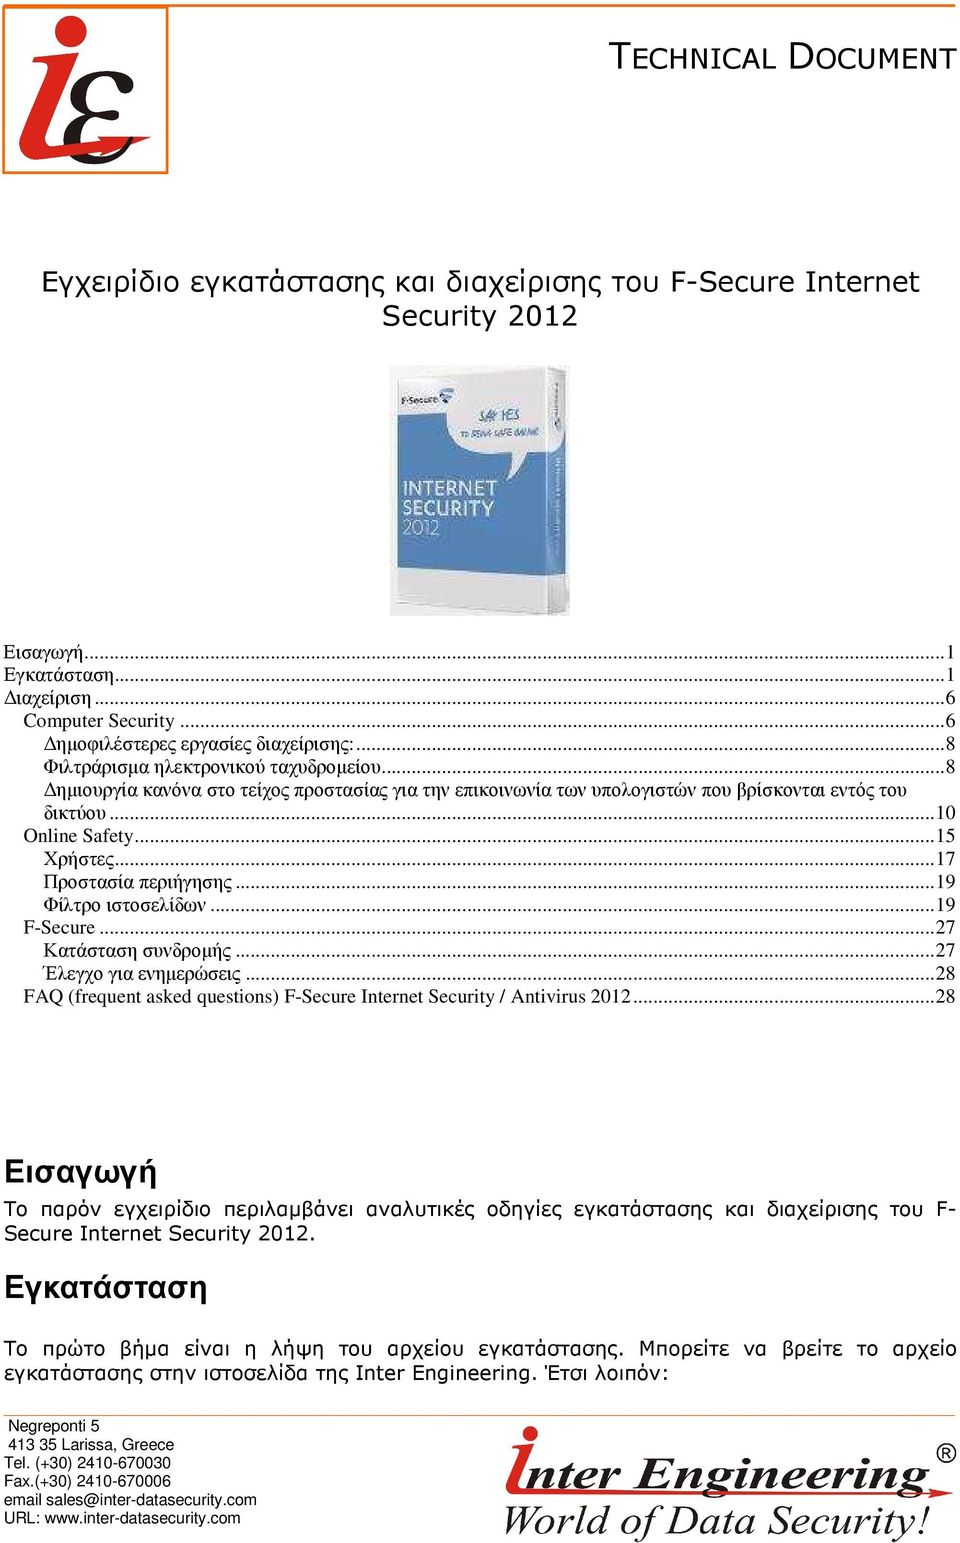 ..17 Προστασία περιήγησης...19 Φίλτρο ιστοσελίδων...19 F-Secure...27 Κατάσταση συνδροµής...27 Έλεγχο για ενηµερώσεις...28 FAQ (frequent asked questions) F-Secure Internet Security / Antivirus 2012.